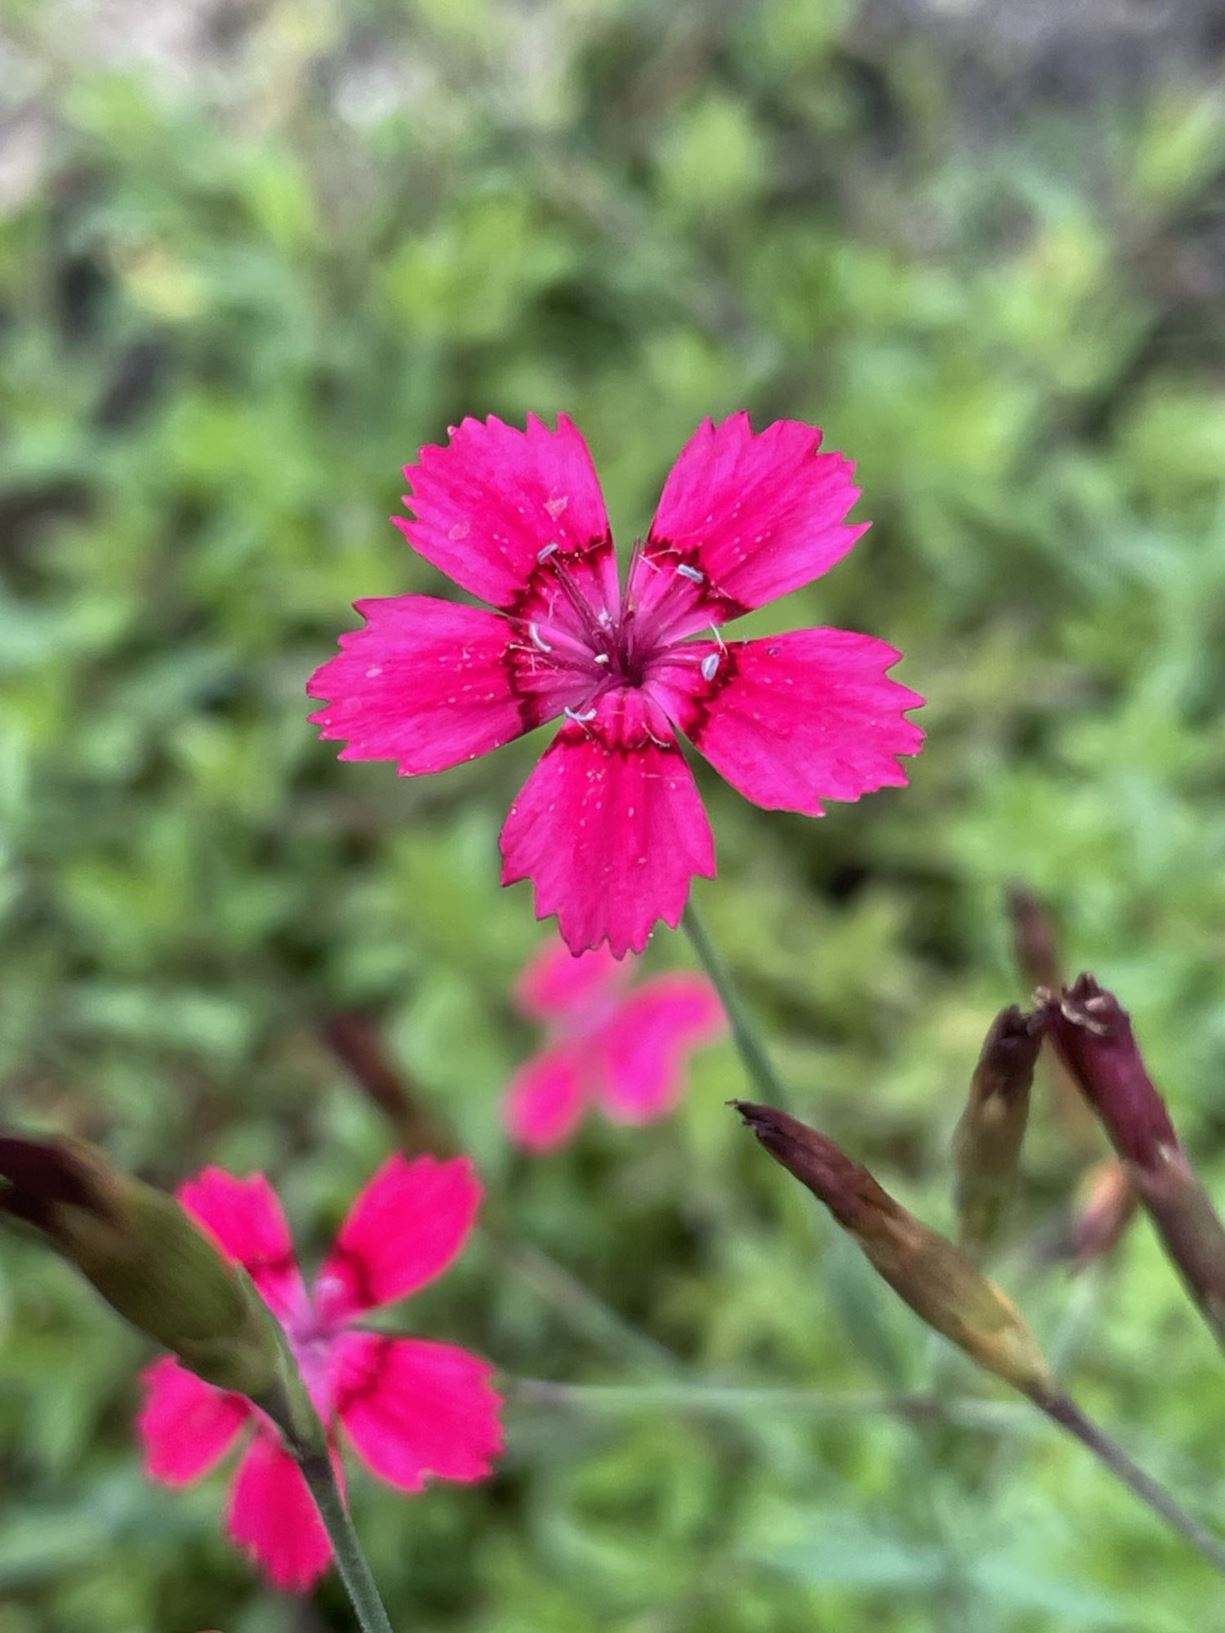 Dianthus deltoides - Steenanjer, Maiden pink